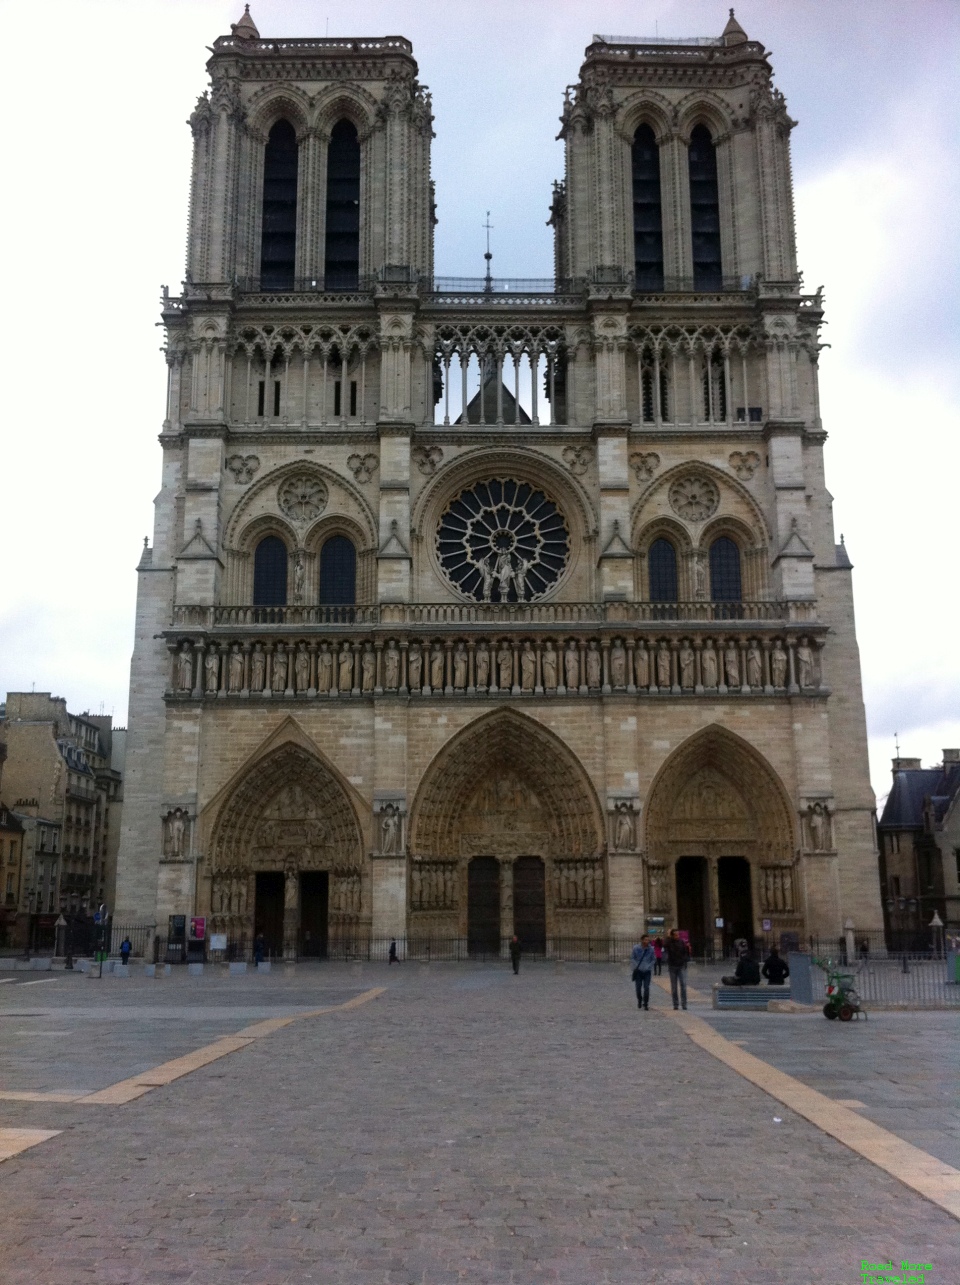 Notre-Dame de Paris bell tower